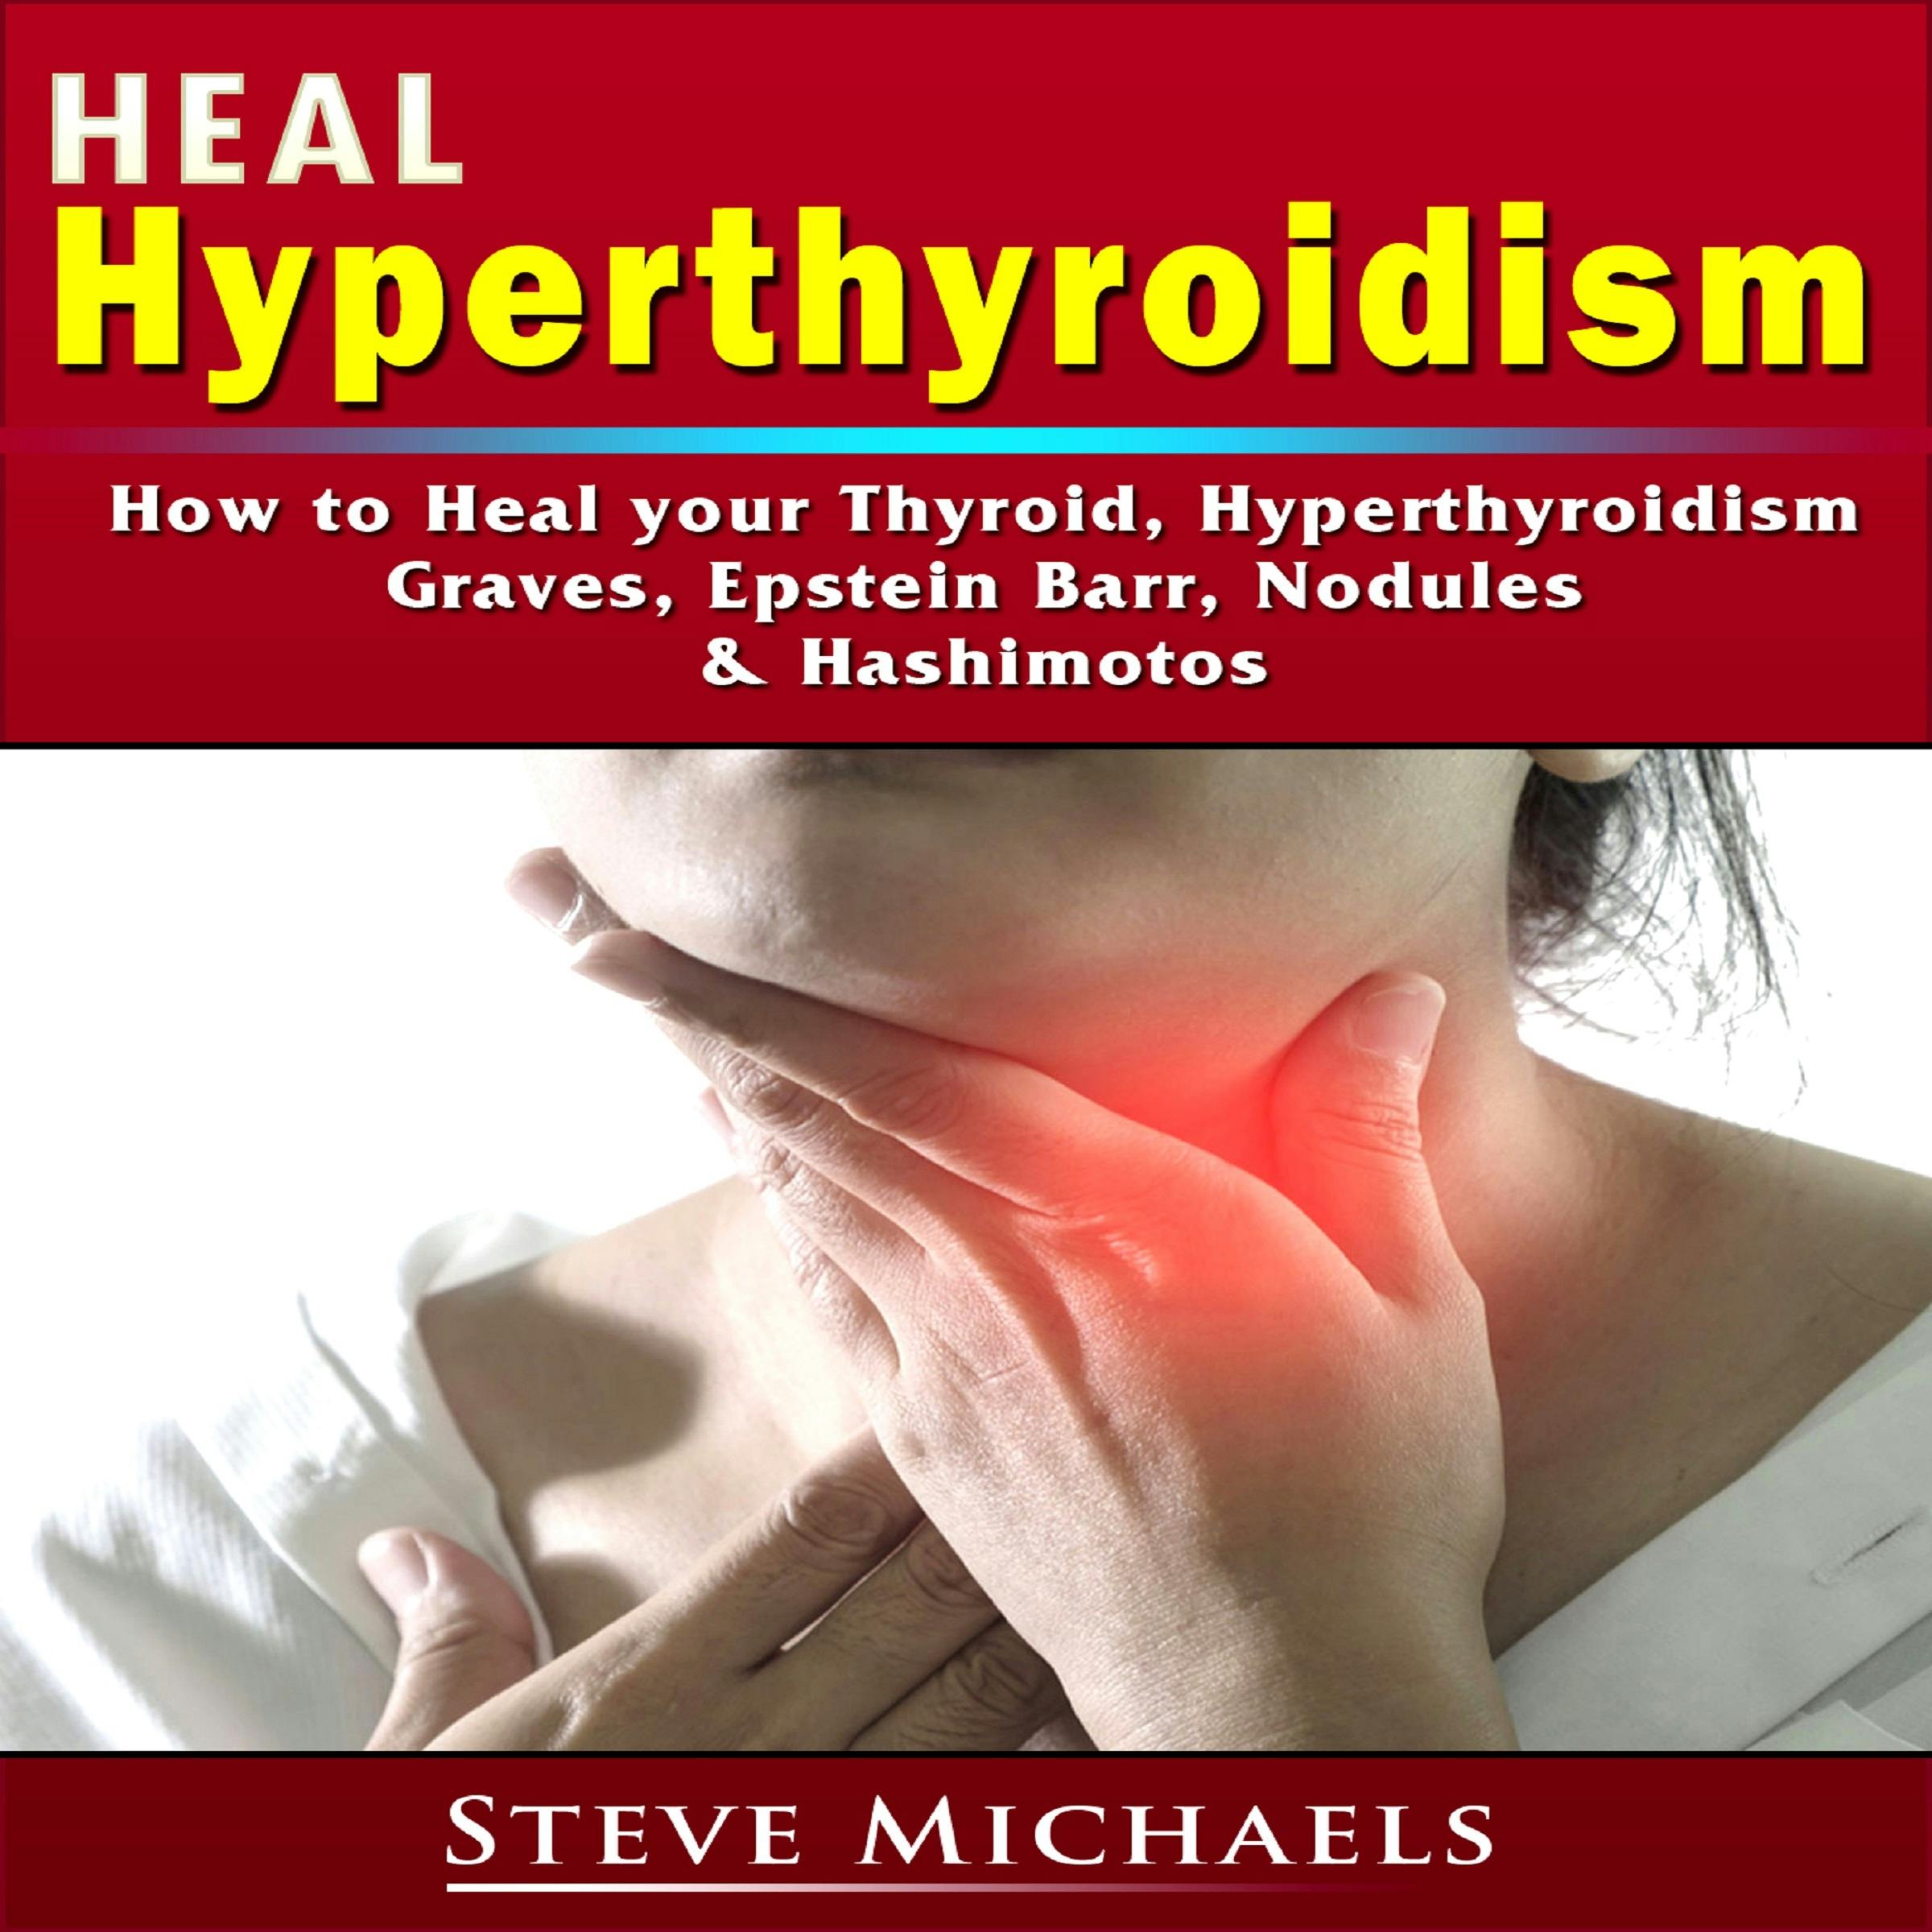 Heal Hyperthyroidism: How to Heal your Thyroid, Hyperthyroidism, Graves, Epstein Barr, Nodules, & Hashimotos - undefined